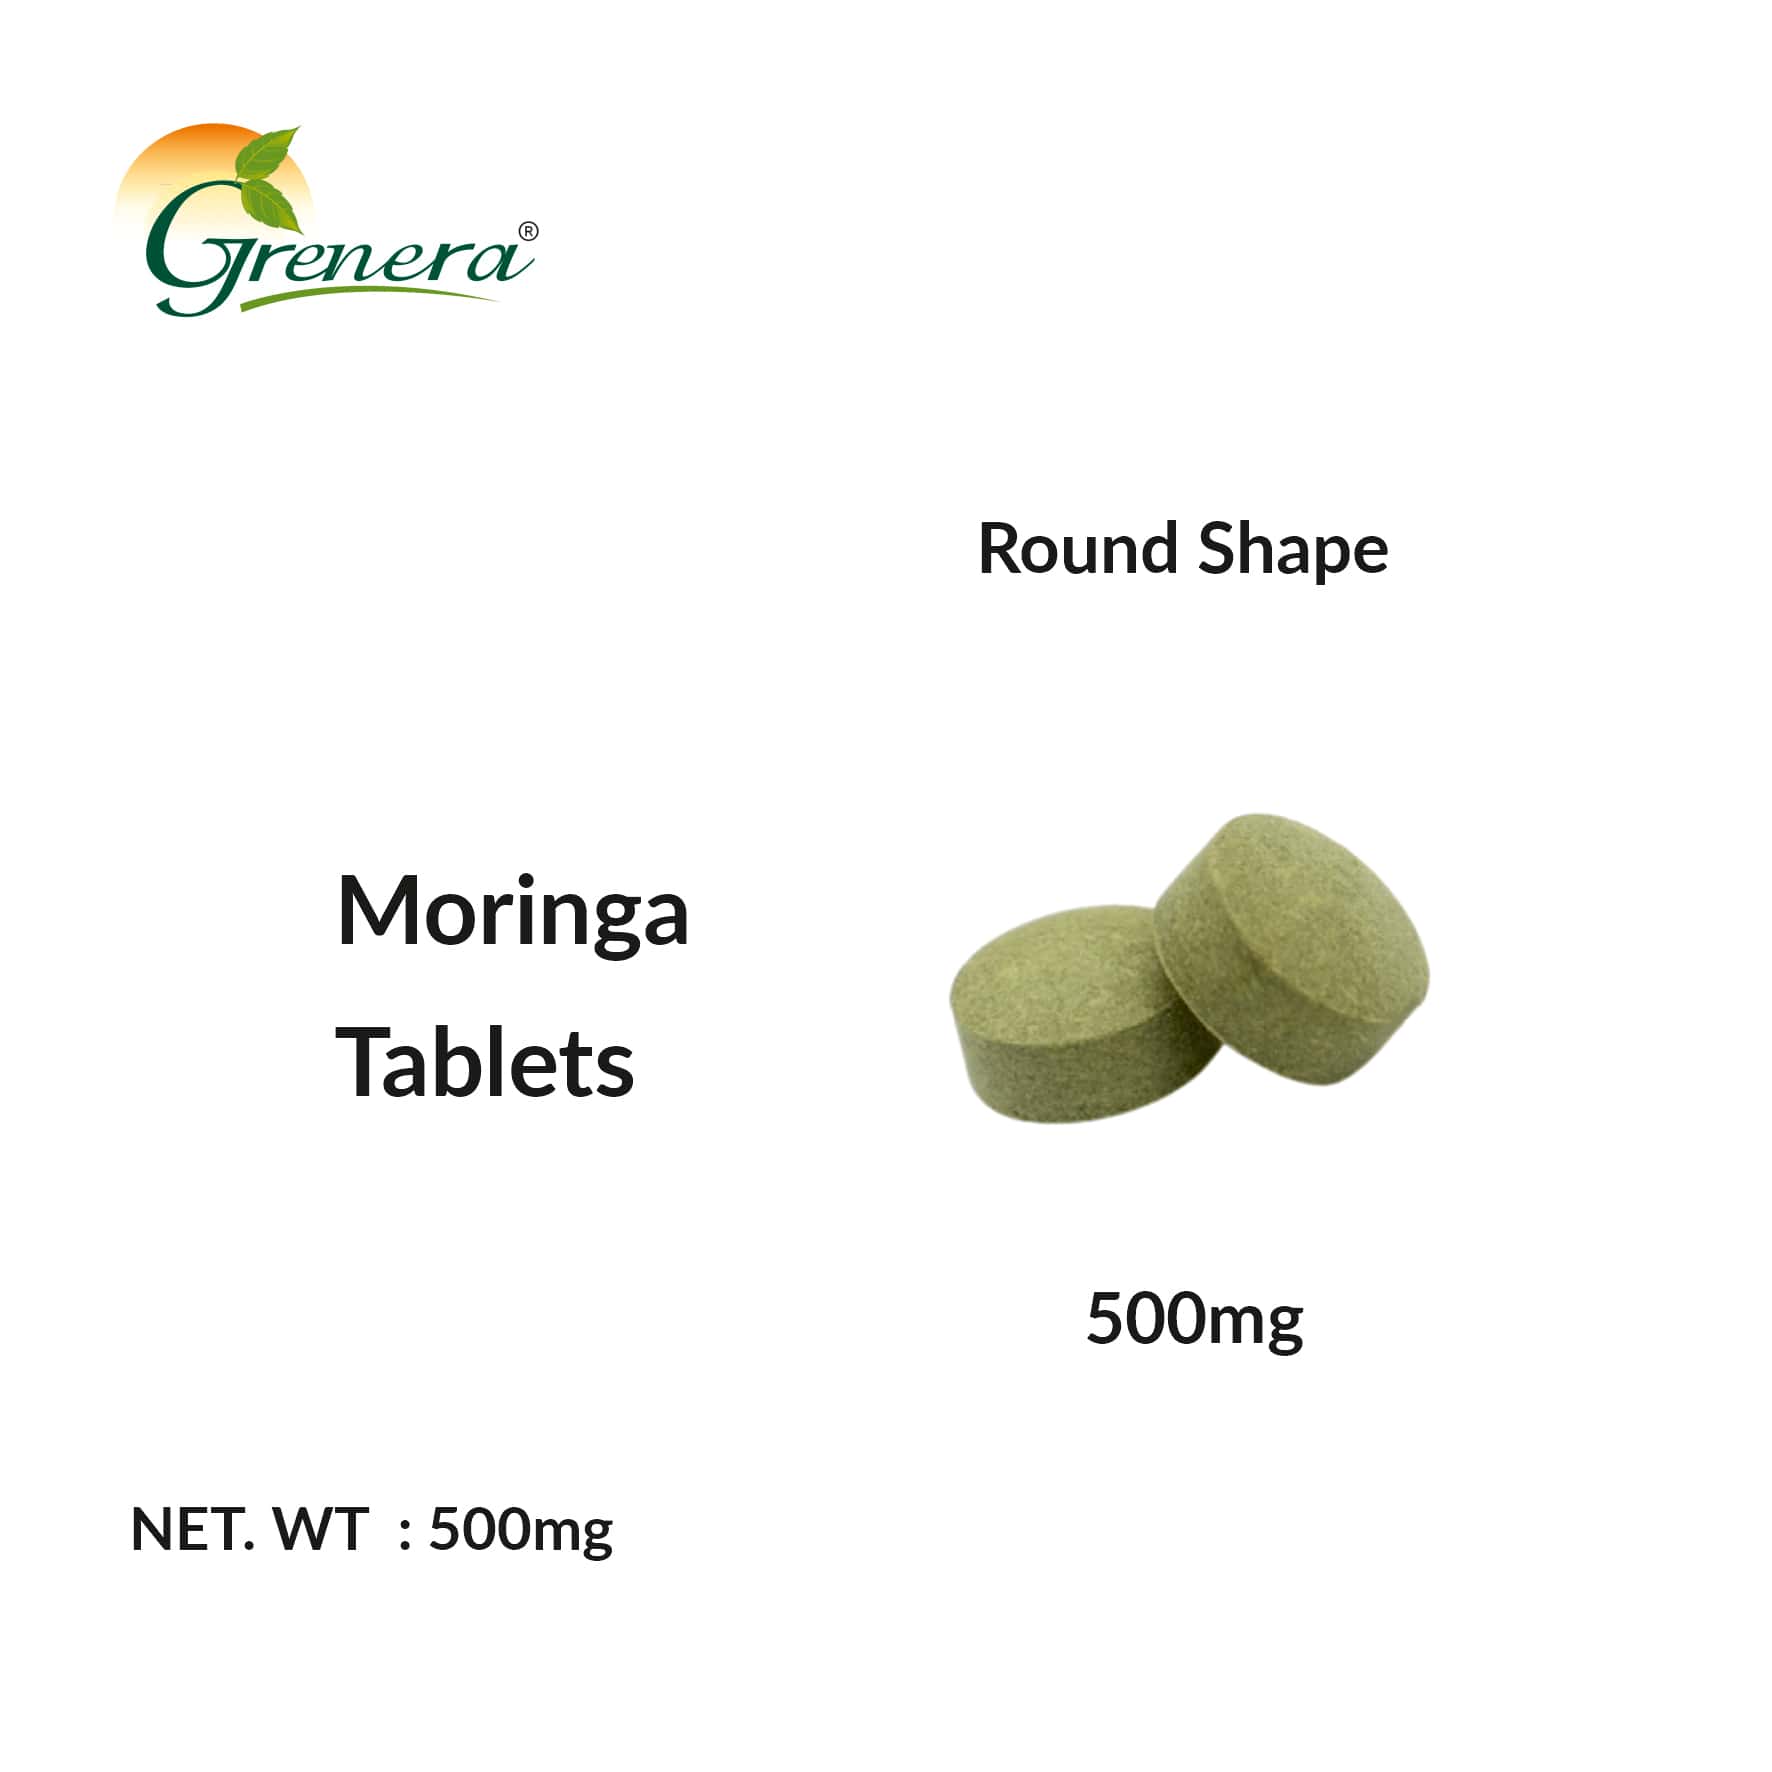 Moringa tablets size